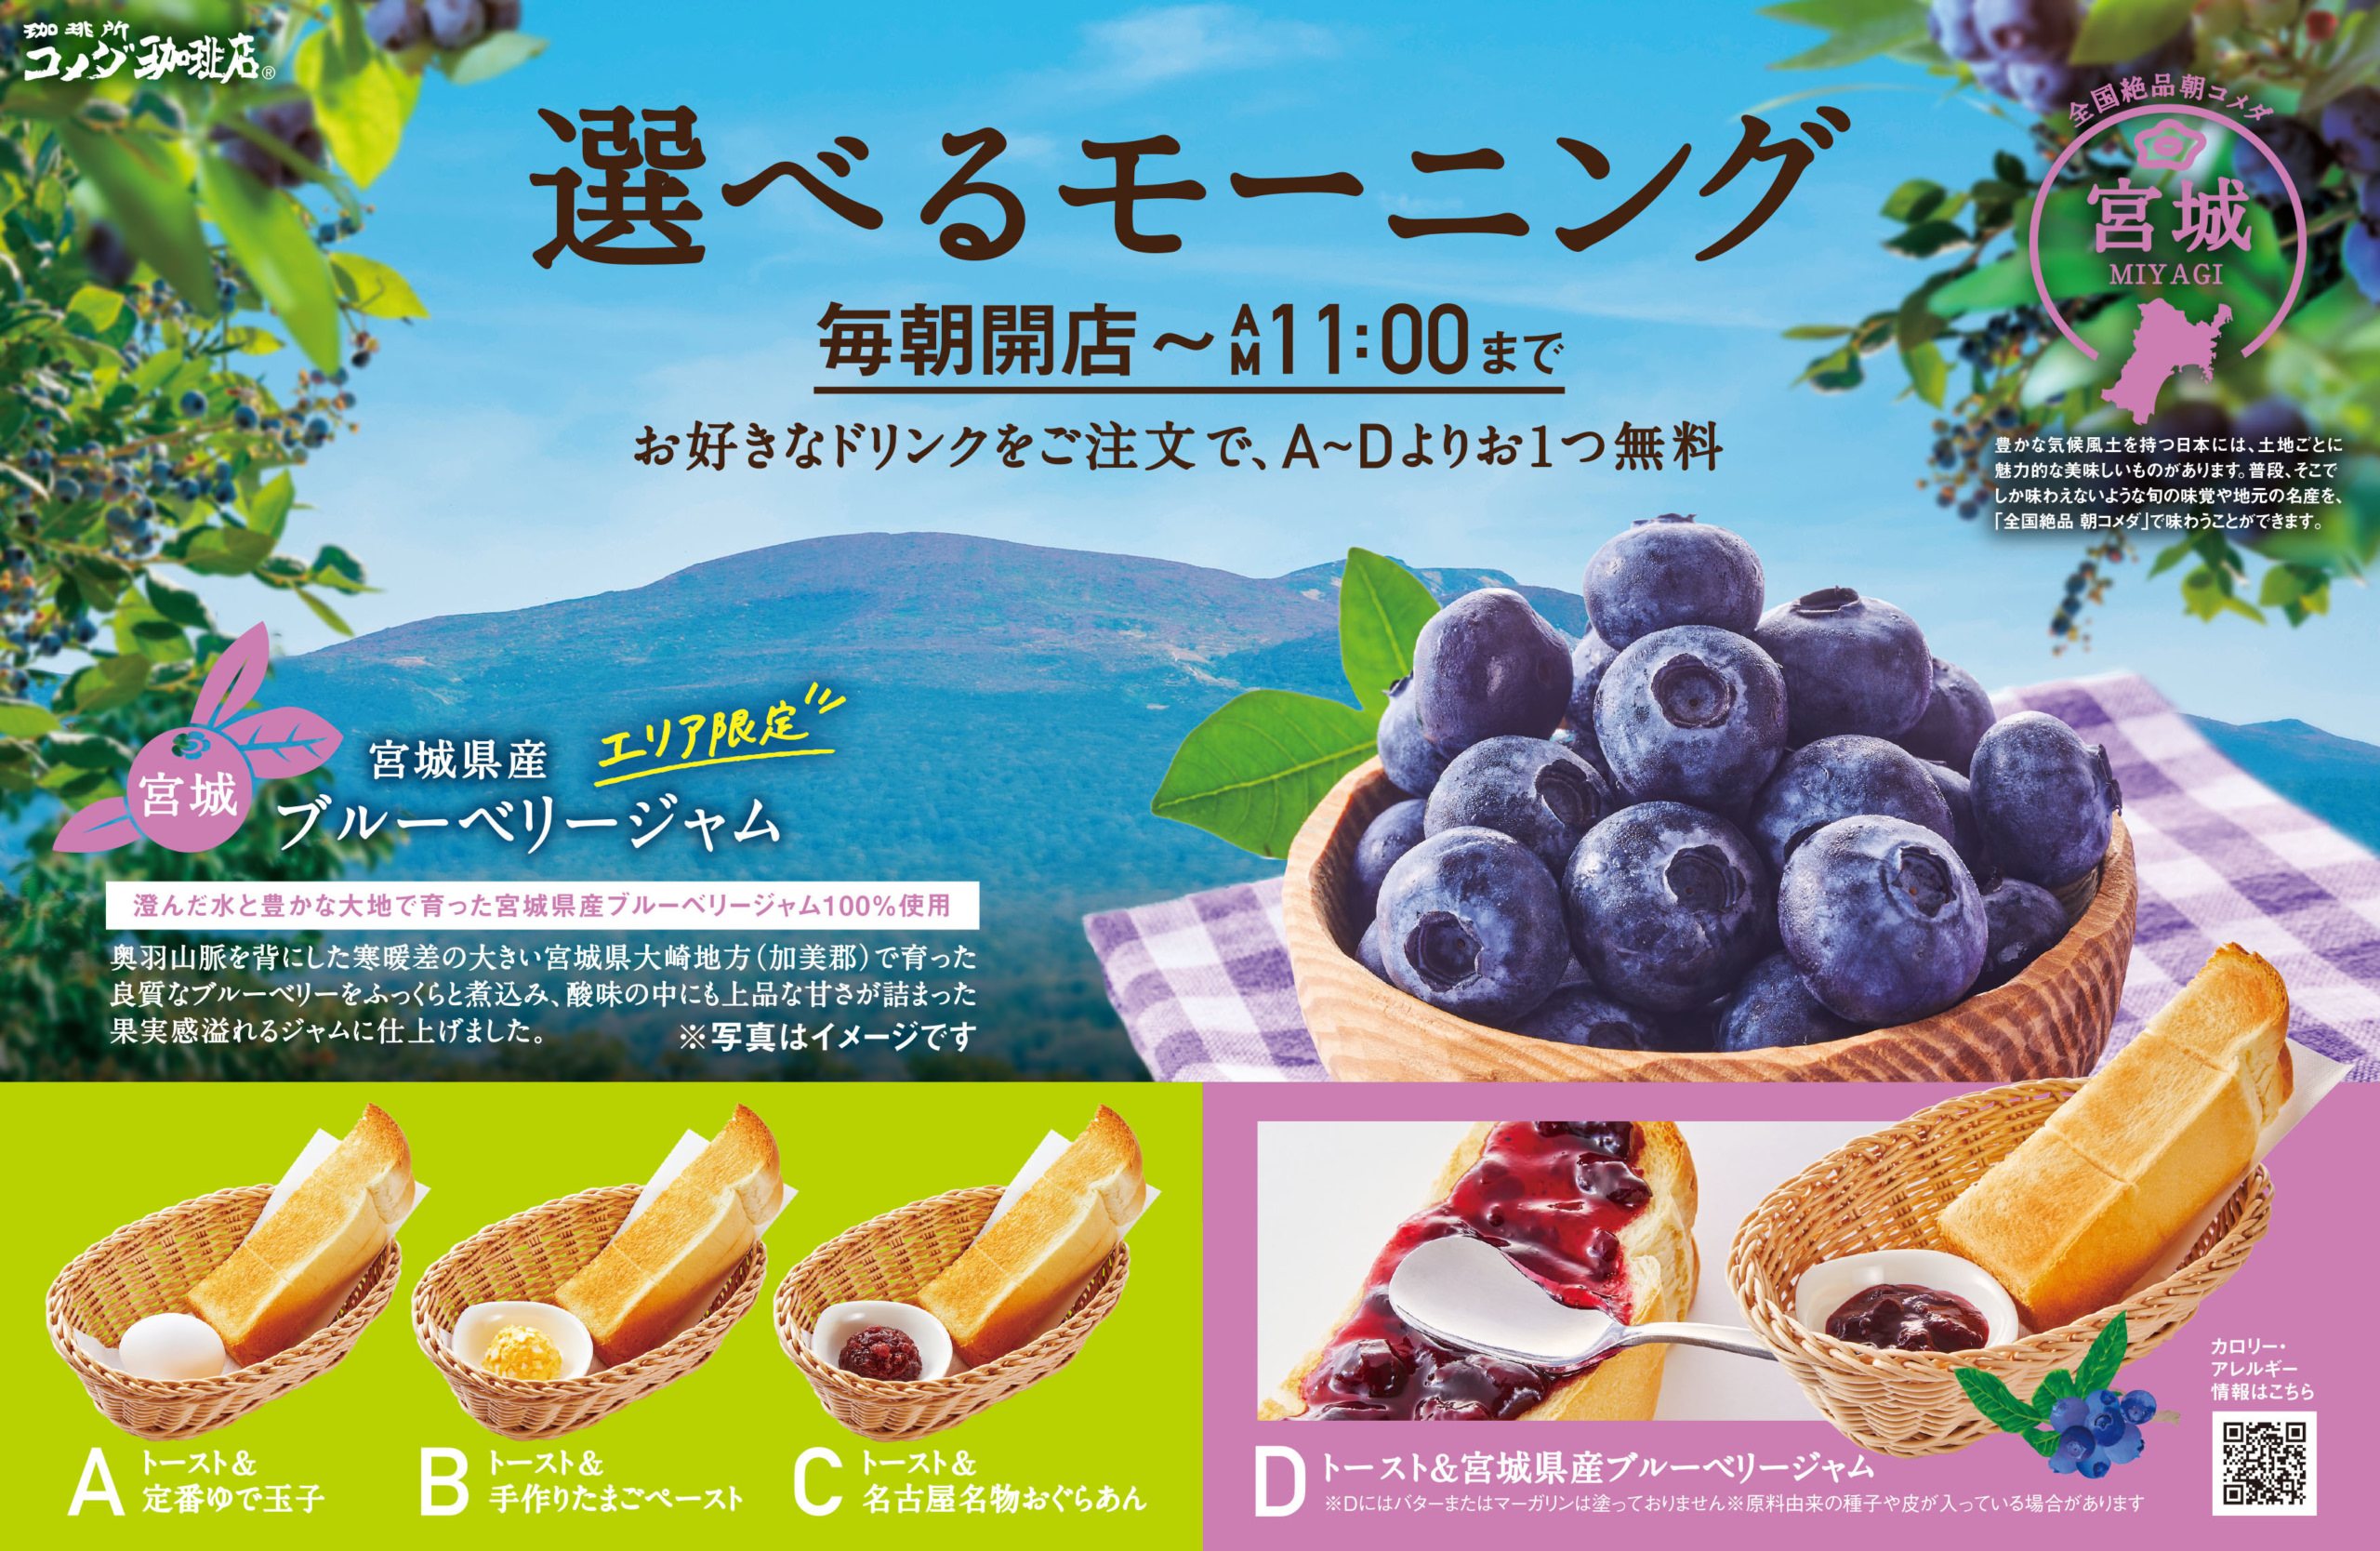 京都の飲食店18店舗を巡るスタンプラリーを10月31日まで開催！
旨辛ホットソース「マスカラス」料理を食べて食欲の秋を堪能